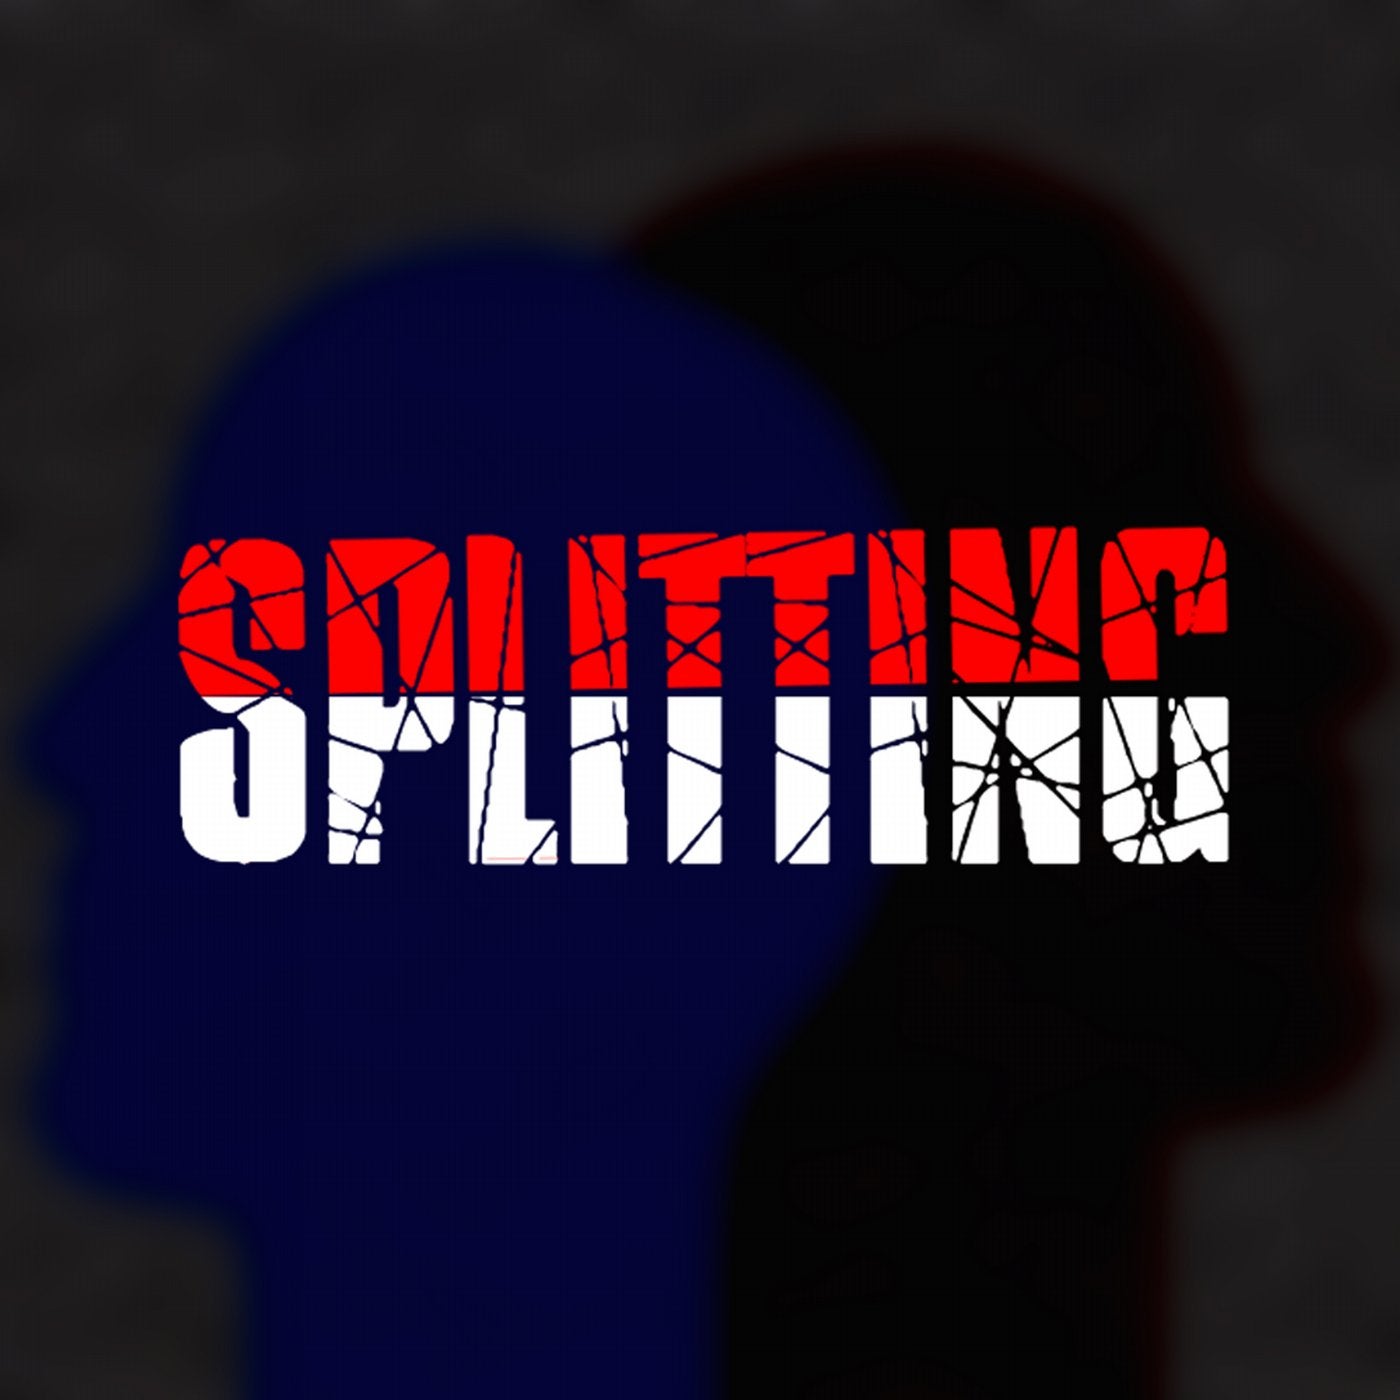 Splitting